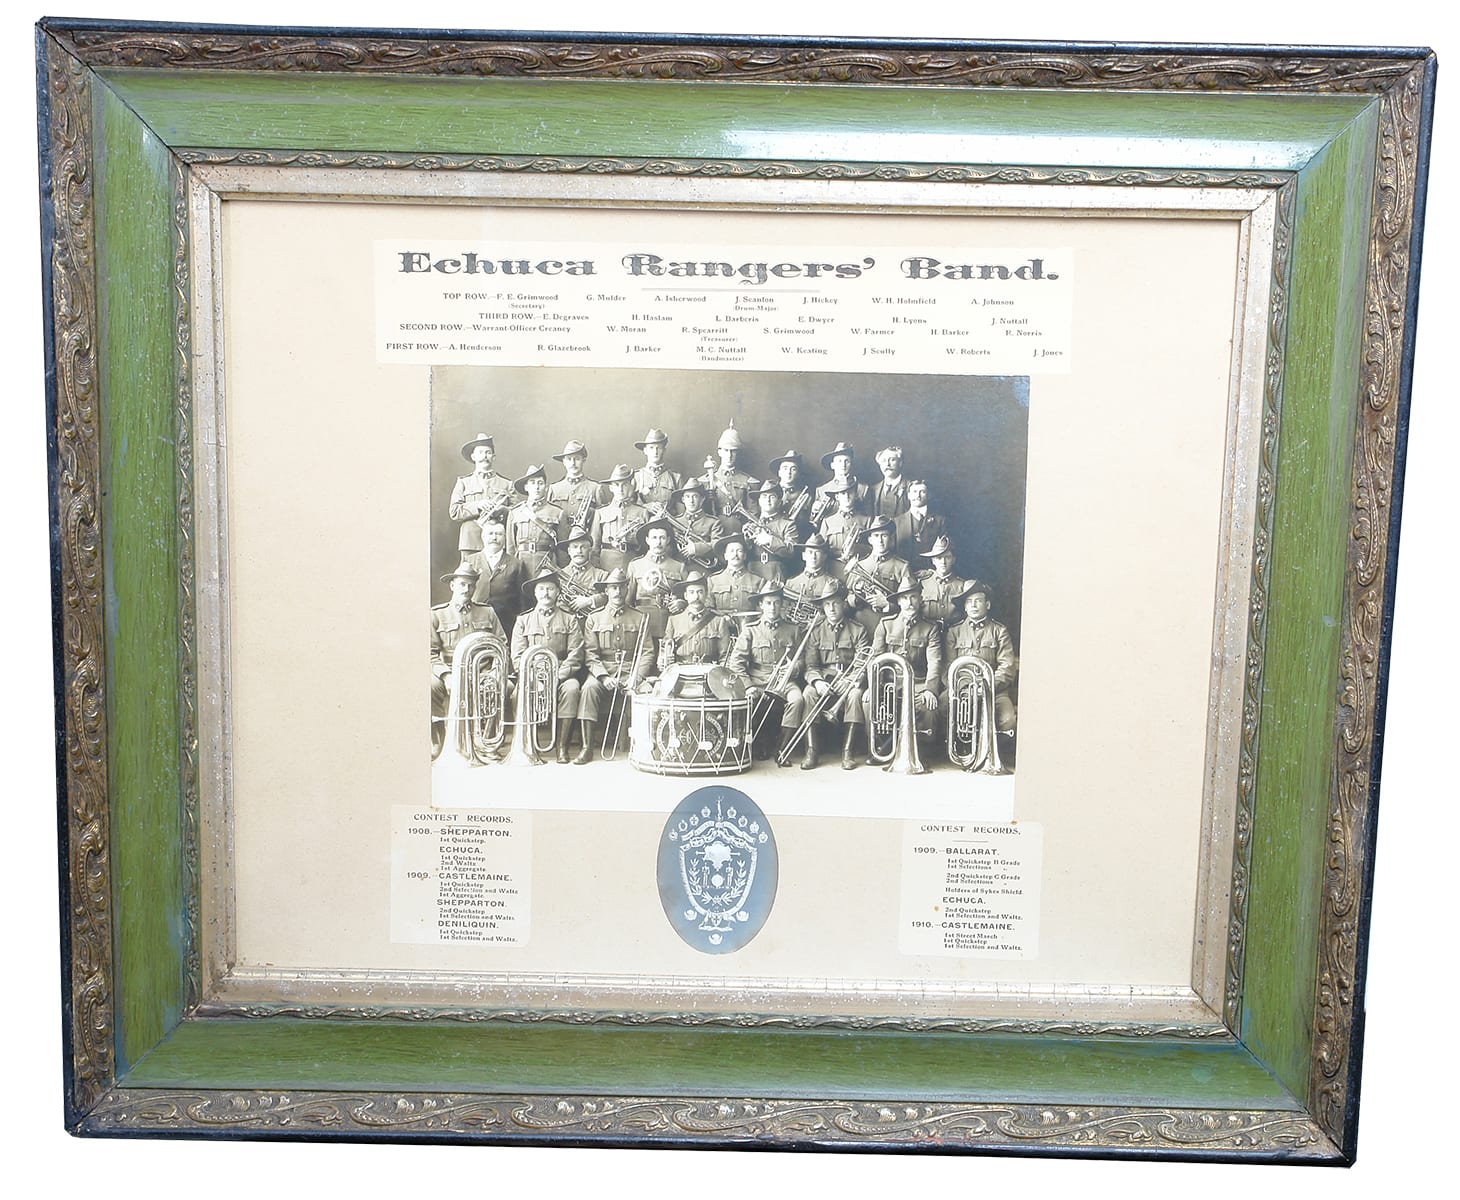 Echuca Rangers Band Framed Photograph